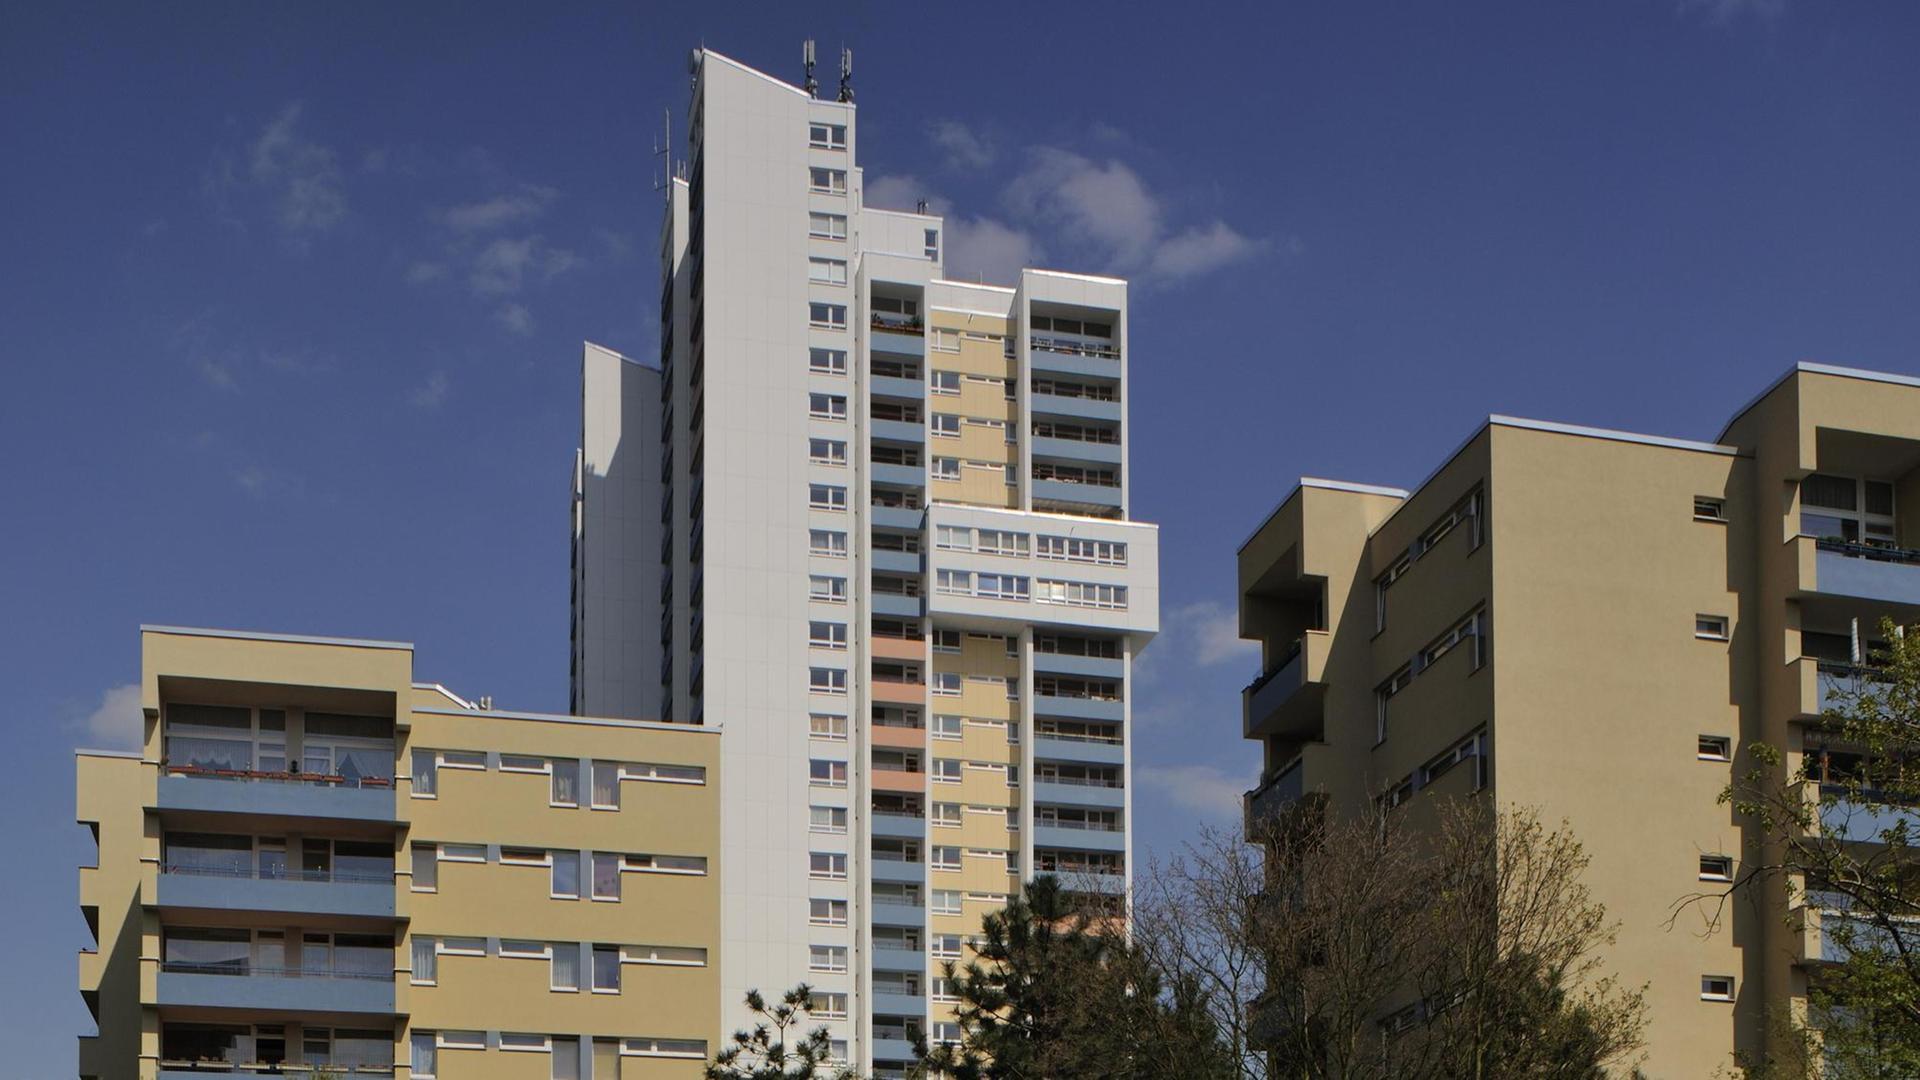 31-geschossiges Wohnhochhaus von Walter Gropius mit 18.000 Wohnungen in Berlin.